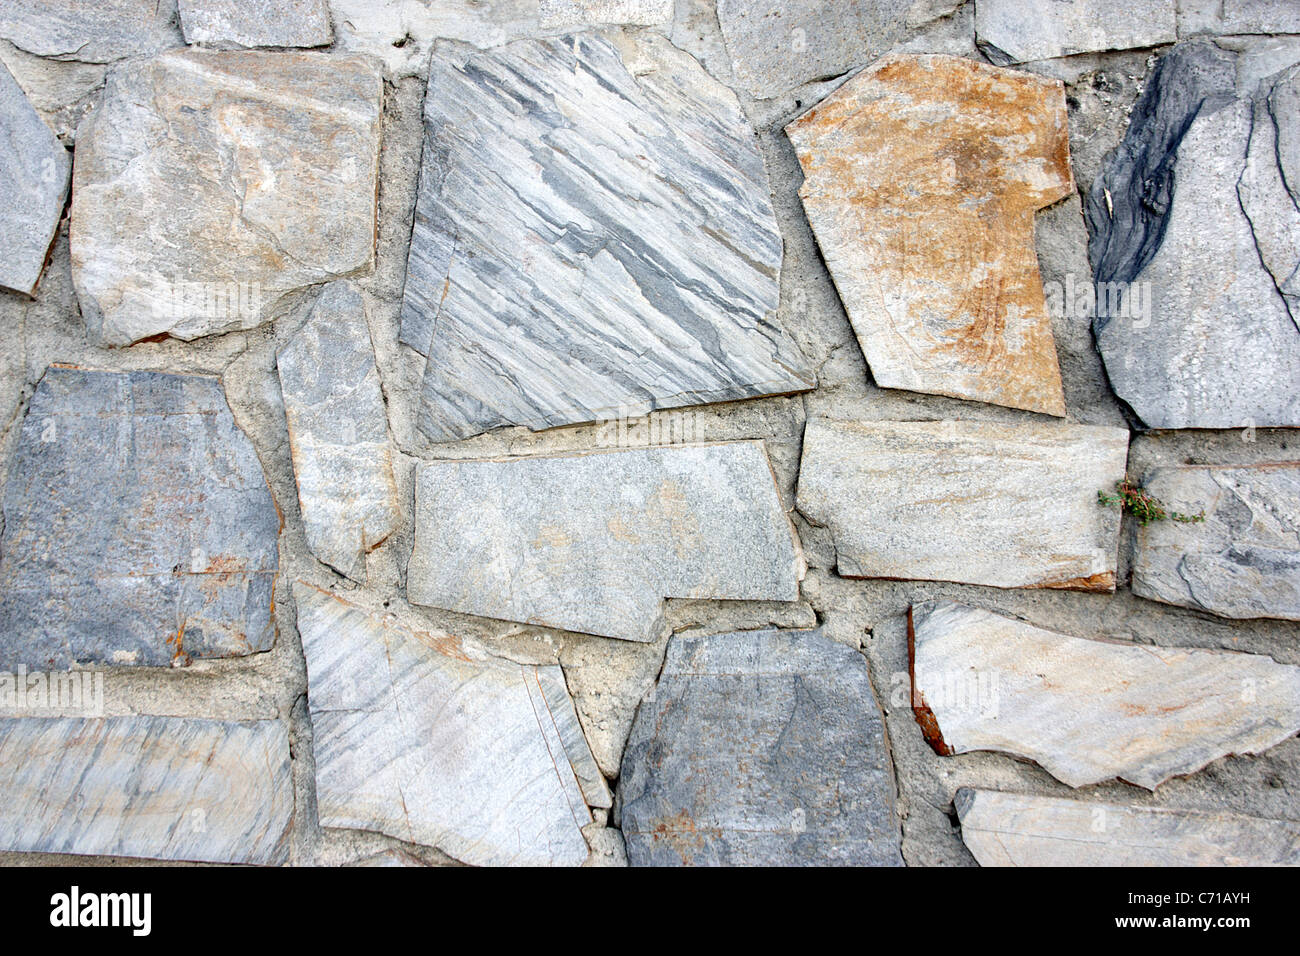 Fonds des Bildschirms eine Mauer aus grauen Steinen mit braunen Töne in einem Punkt der Aufmerksamkeit. Stockfoto